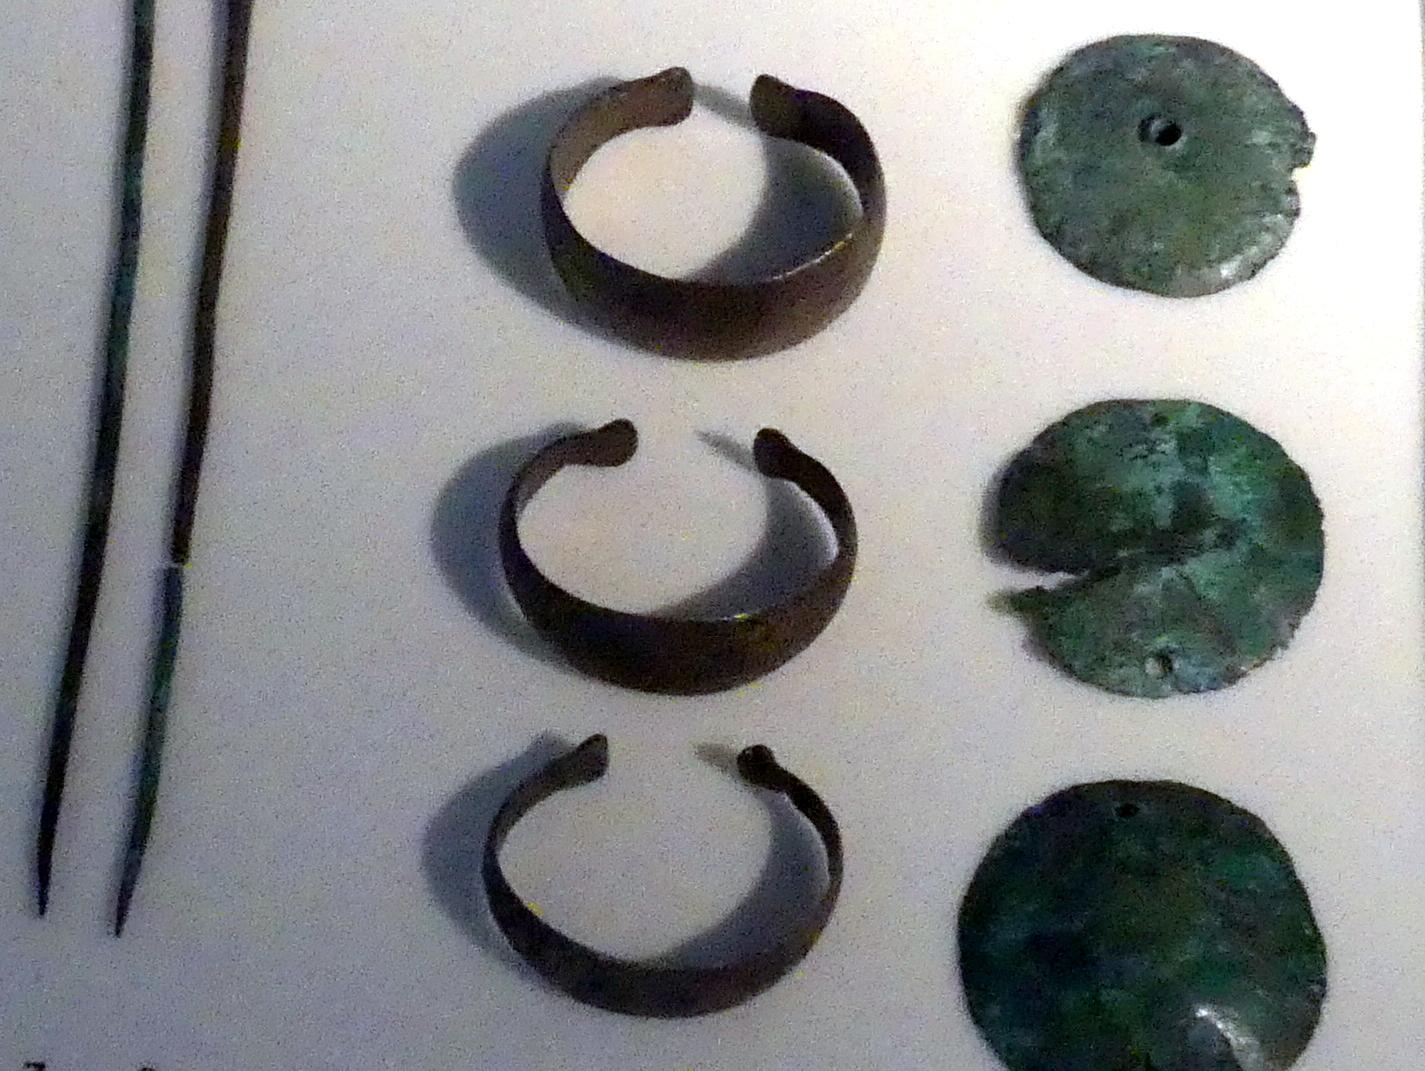 Stollenarmbänder, ziseliert, Mittlere Bronzezeit, 3000 - 1300 v. Chr., 1600 - 1300 v. Chr., Bild 1/2